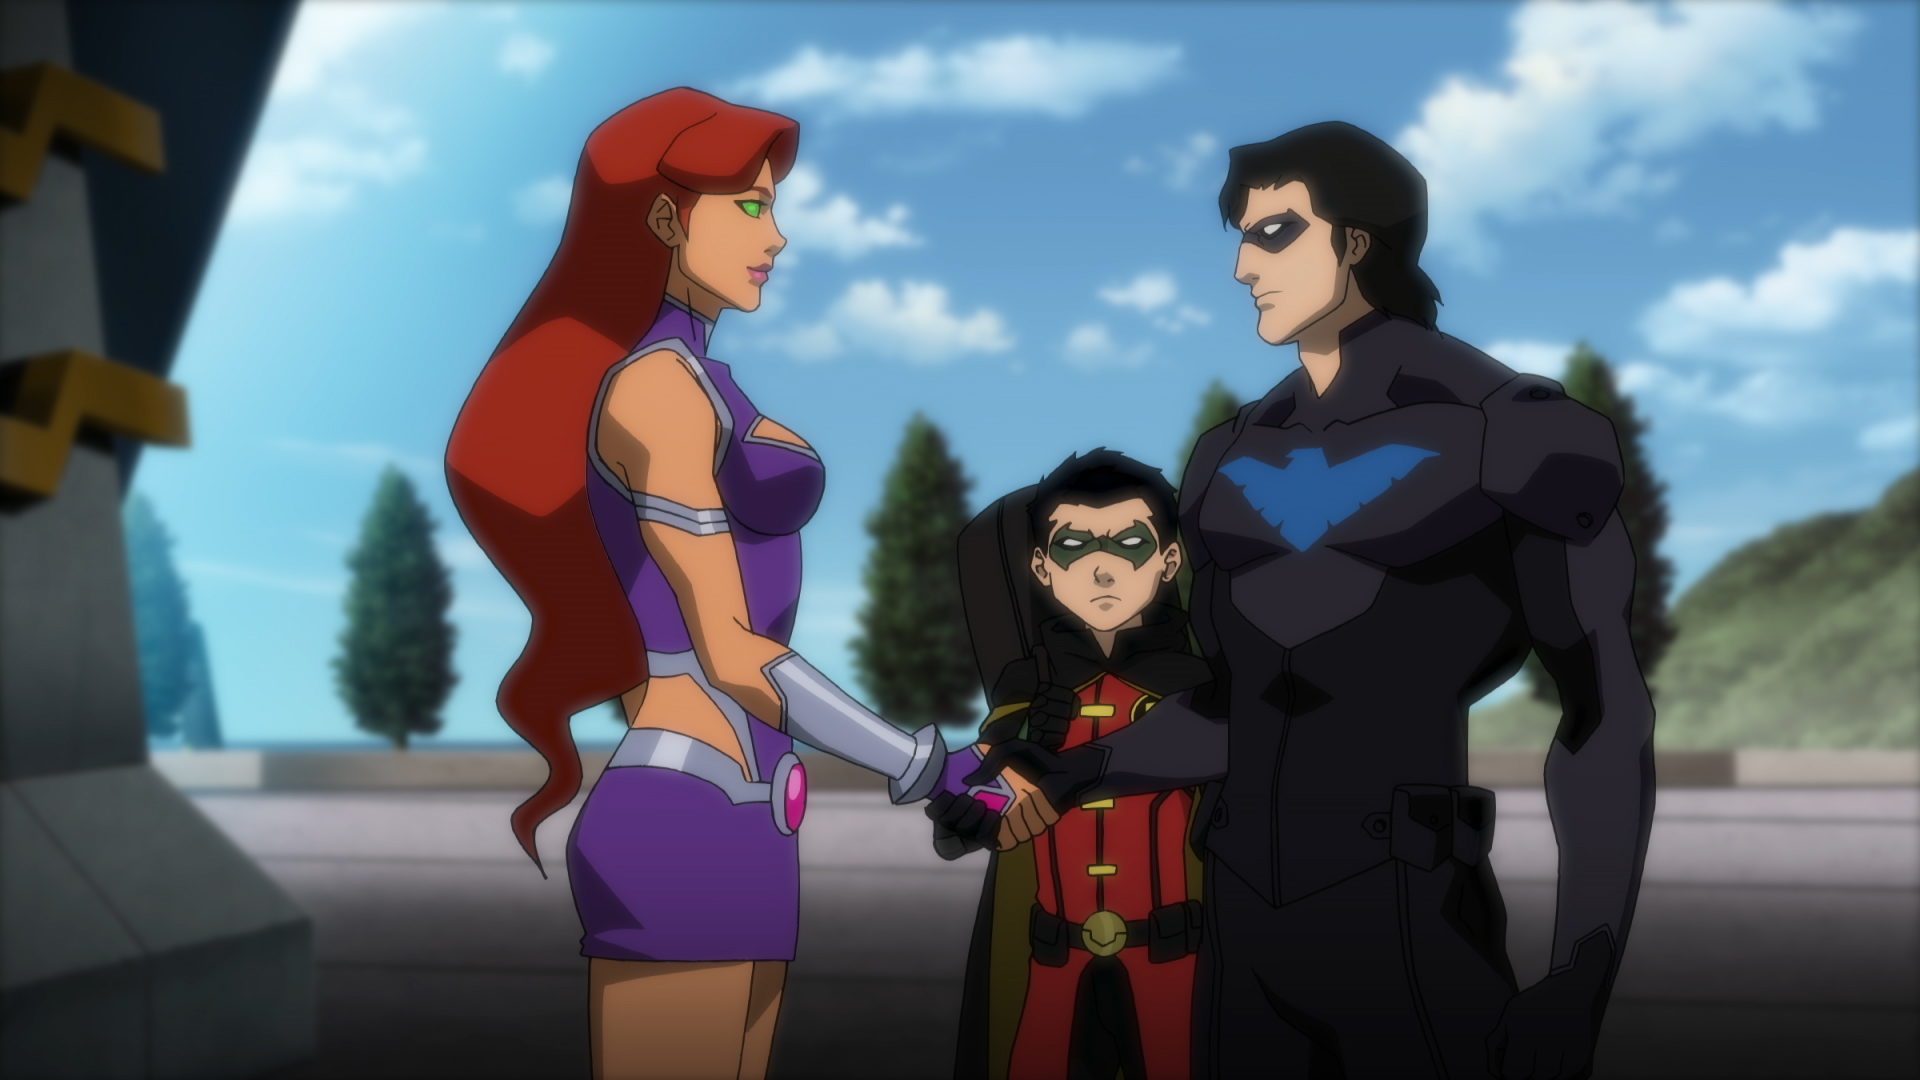 JLvsTTStarfireRobinNightwing Watch: Justice League Vs. Teen Titans Clip